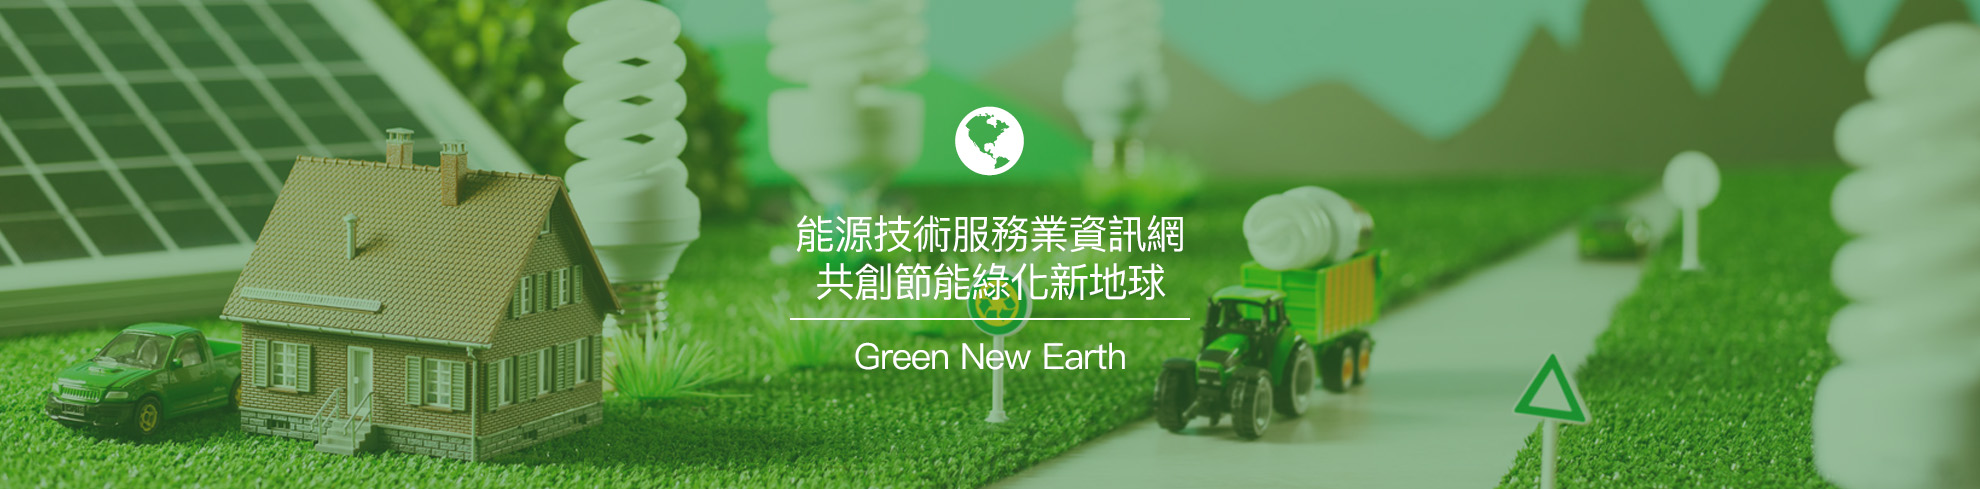 能源技術服務業資訊網共創節能綠化新地球